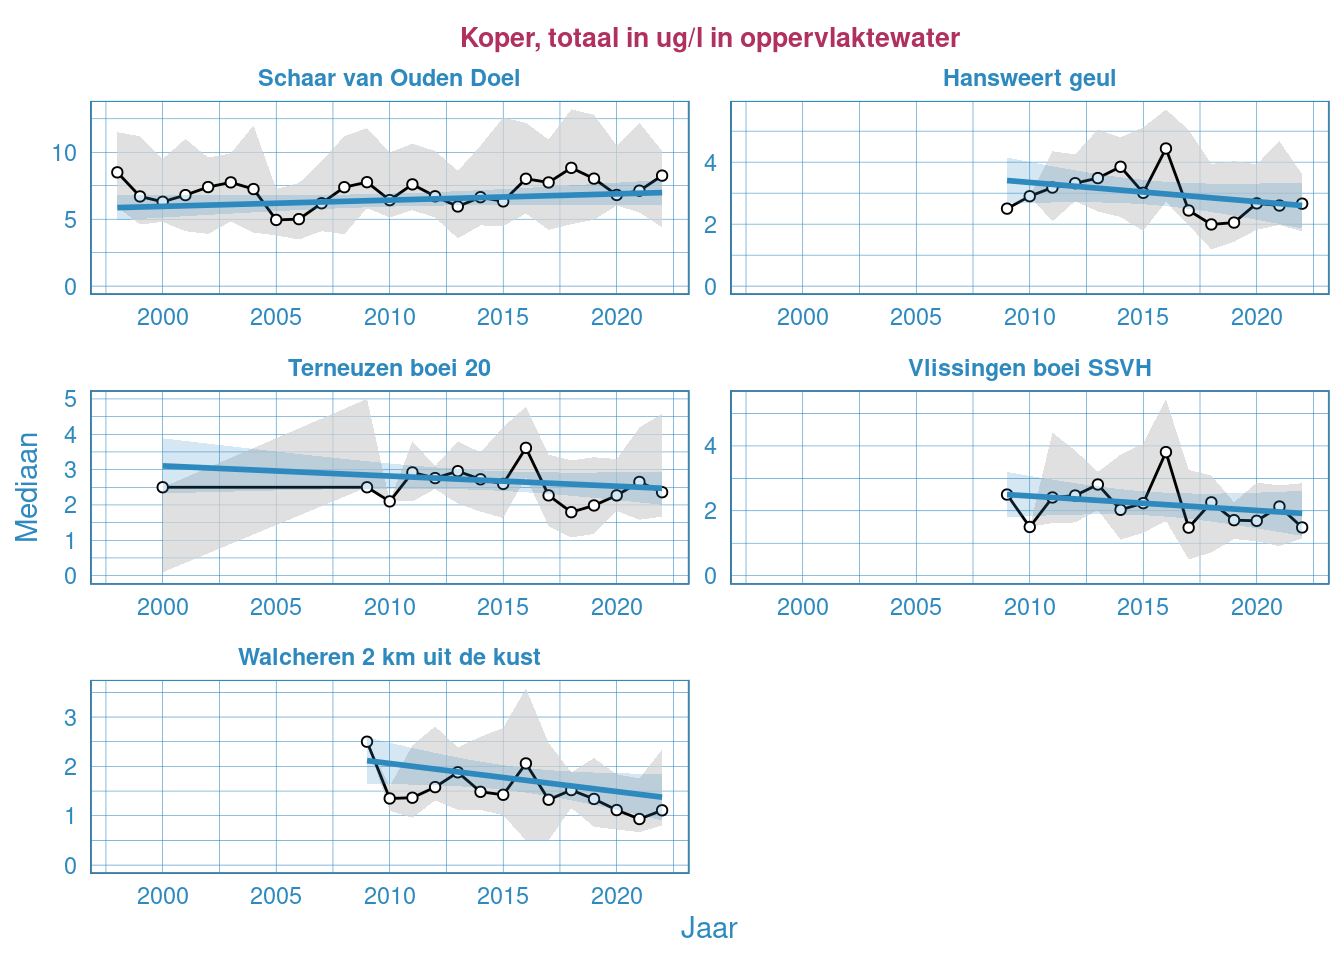 Jaarlijkse Resultaten van het totale kopergehalte in het oppervlaktewater van de Westerschelde en de monding